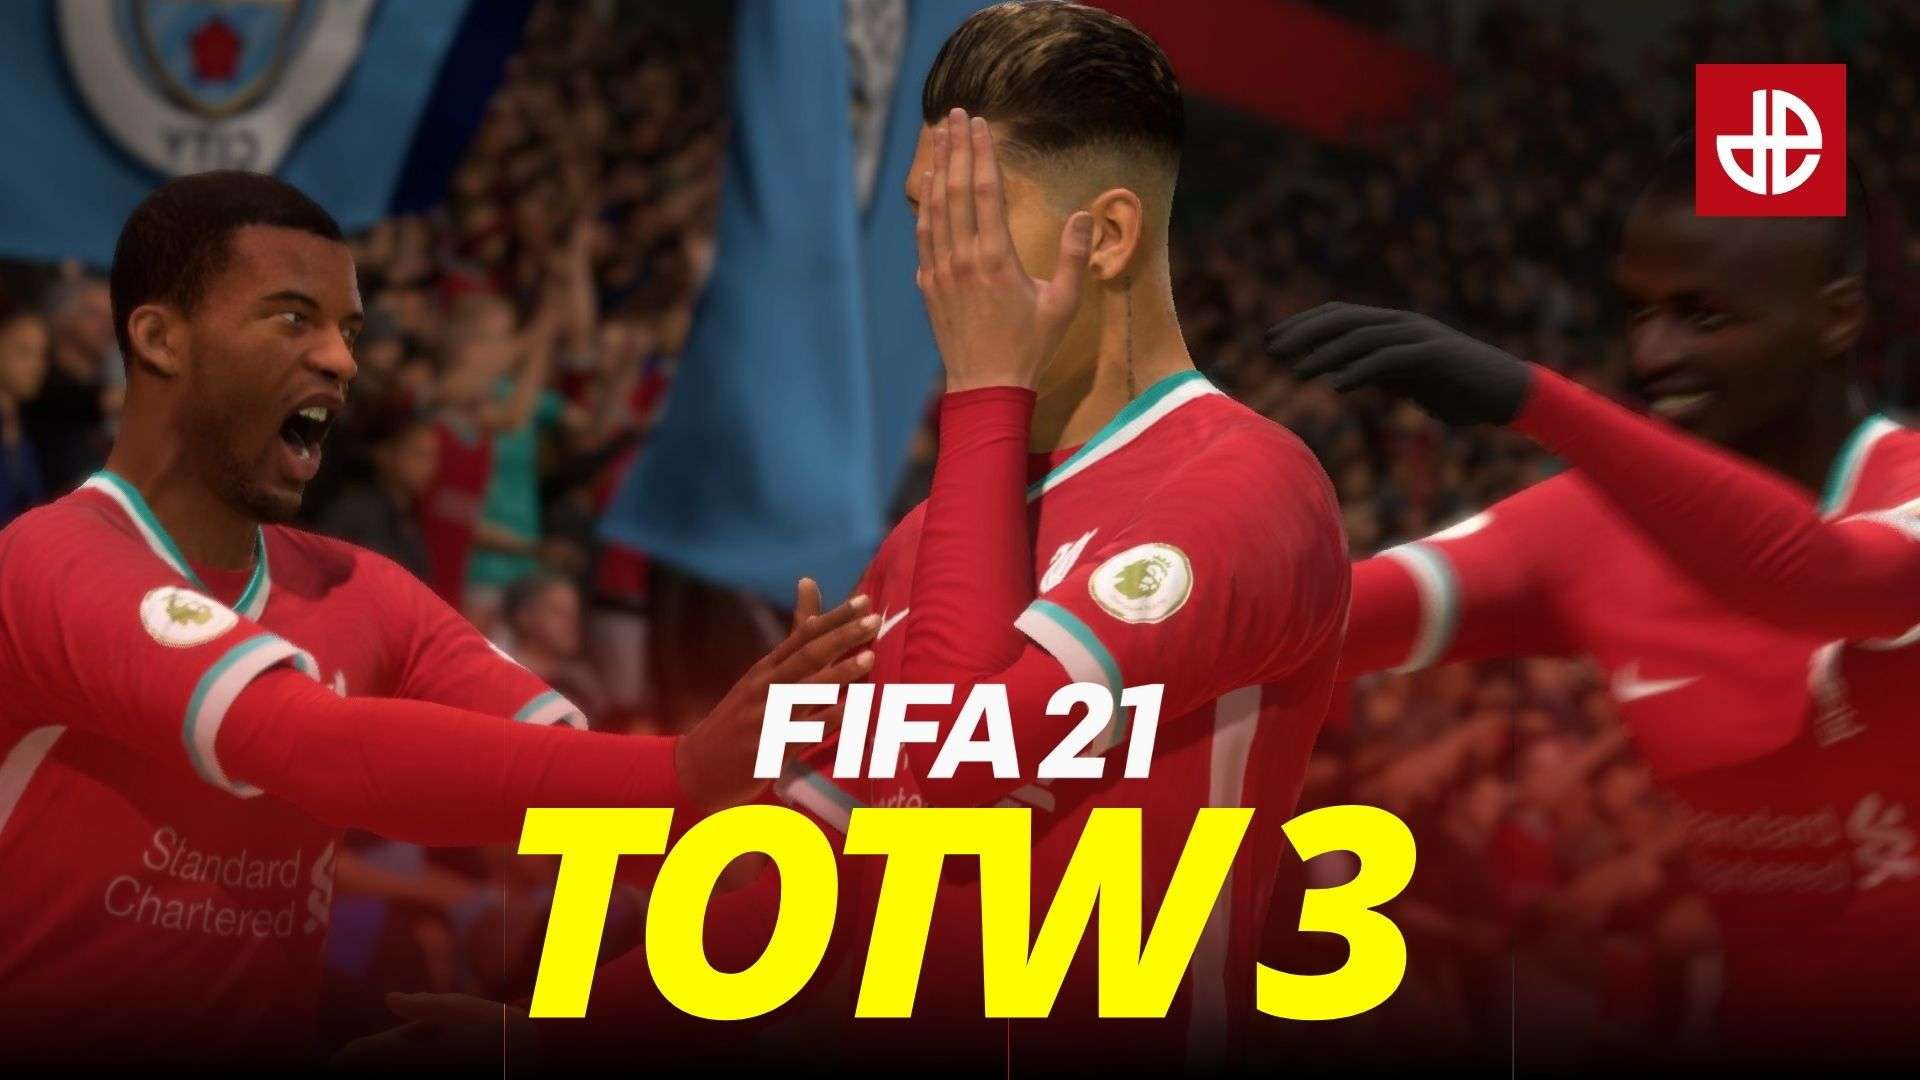 FIFA 21 totw 3